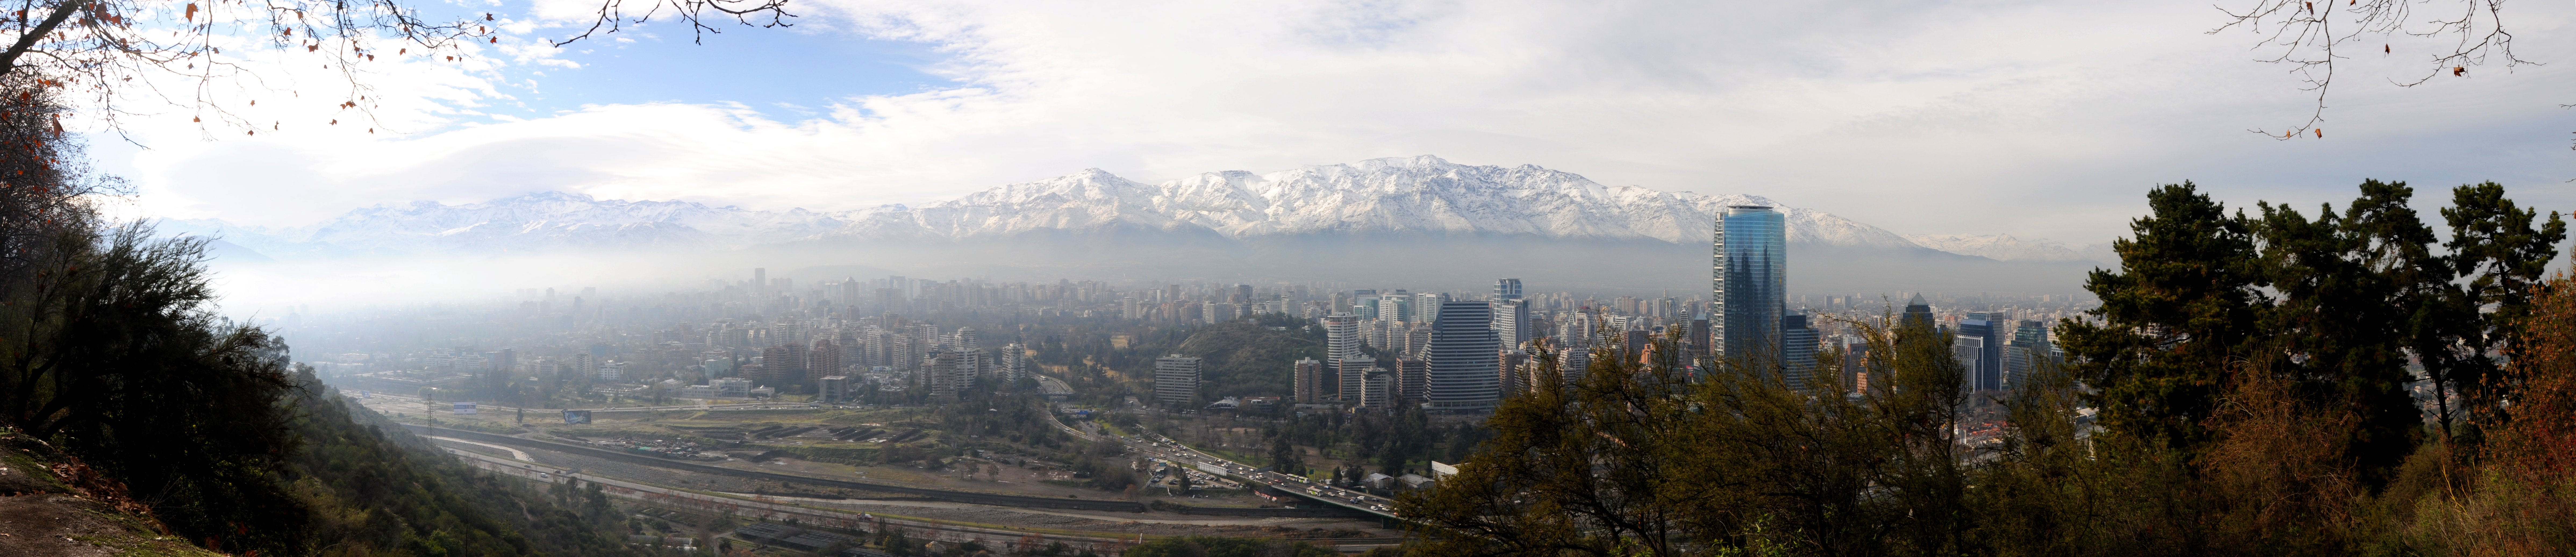 Santiago Panorama